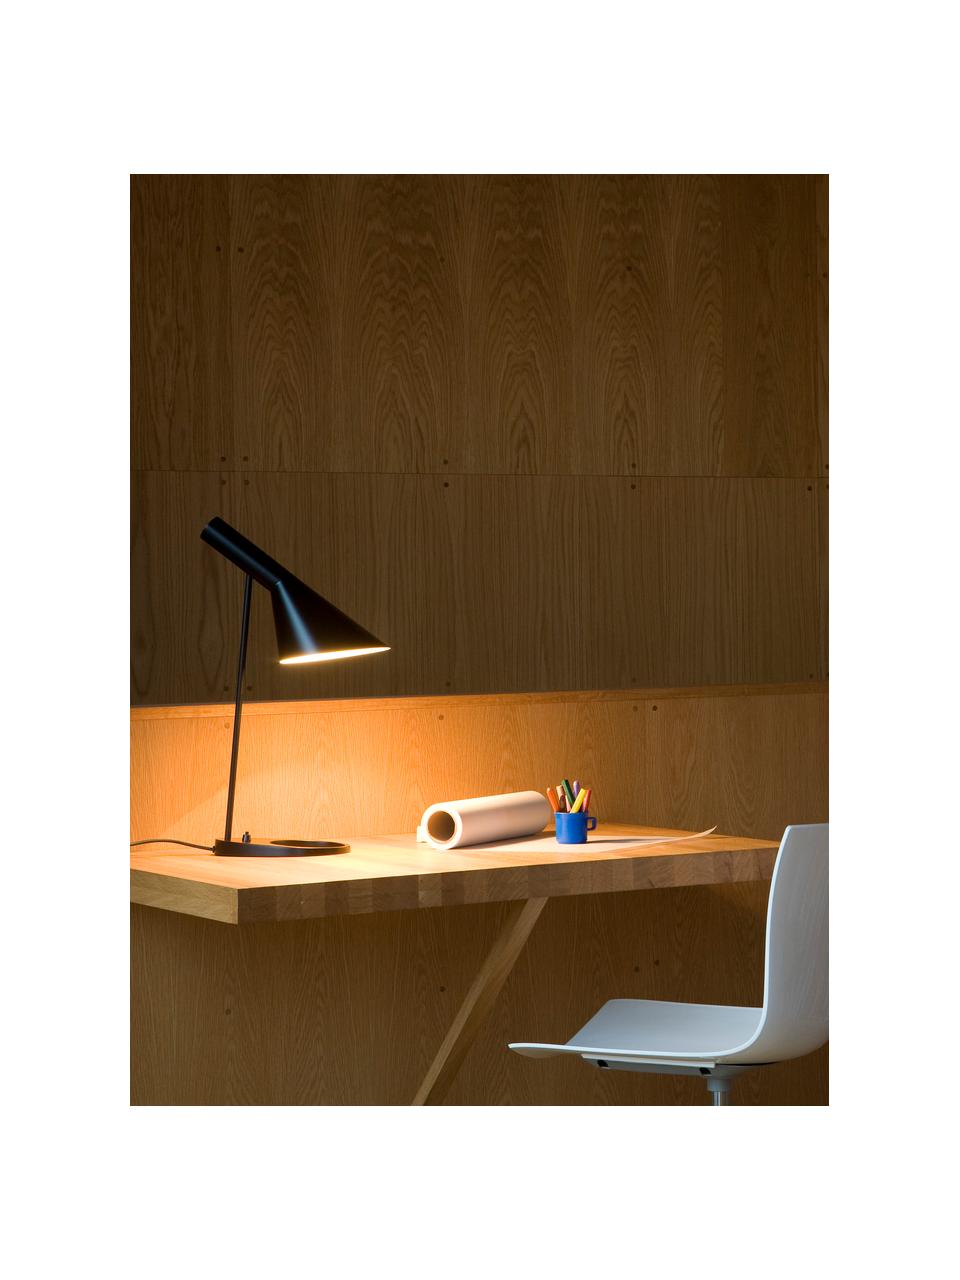 Lampa biurkowa AJ, różne rozmiary, Czarny, S 25 x W 43 cm